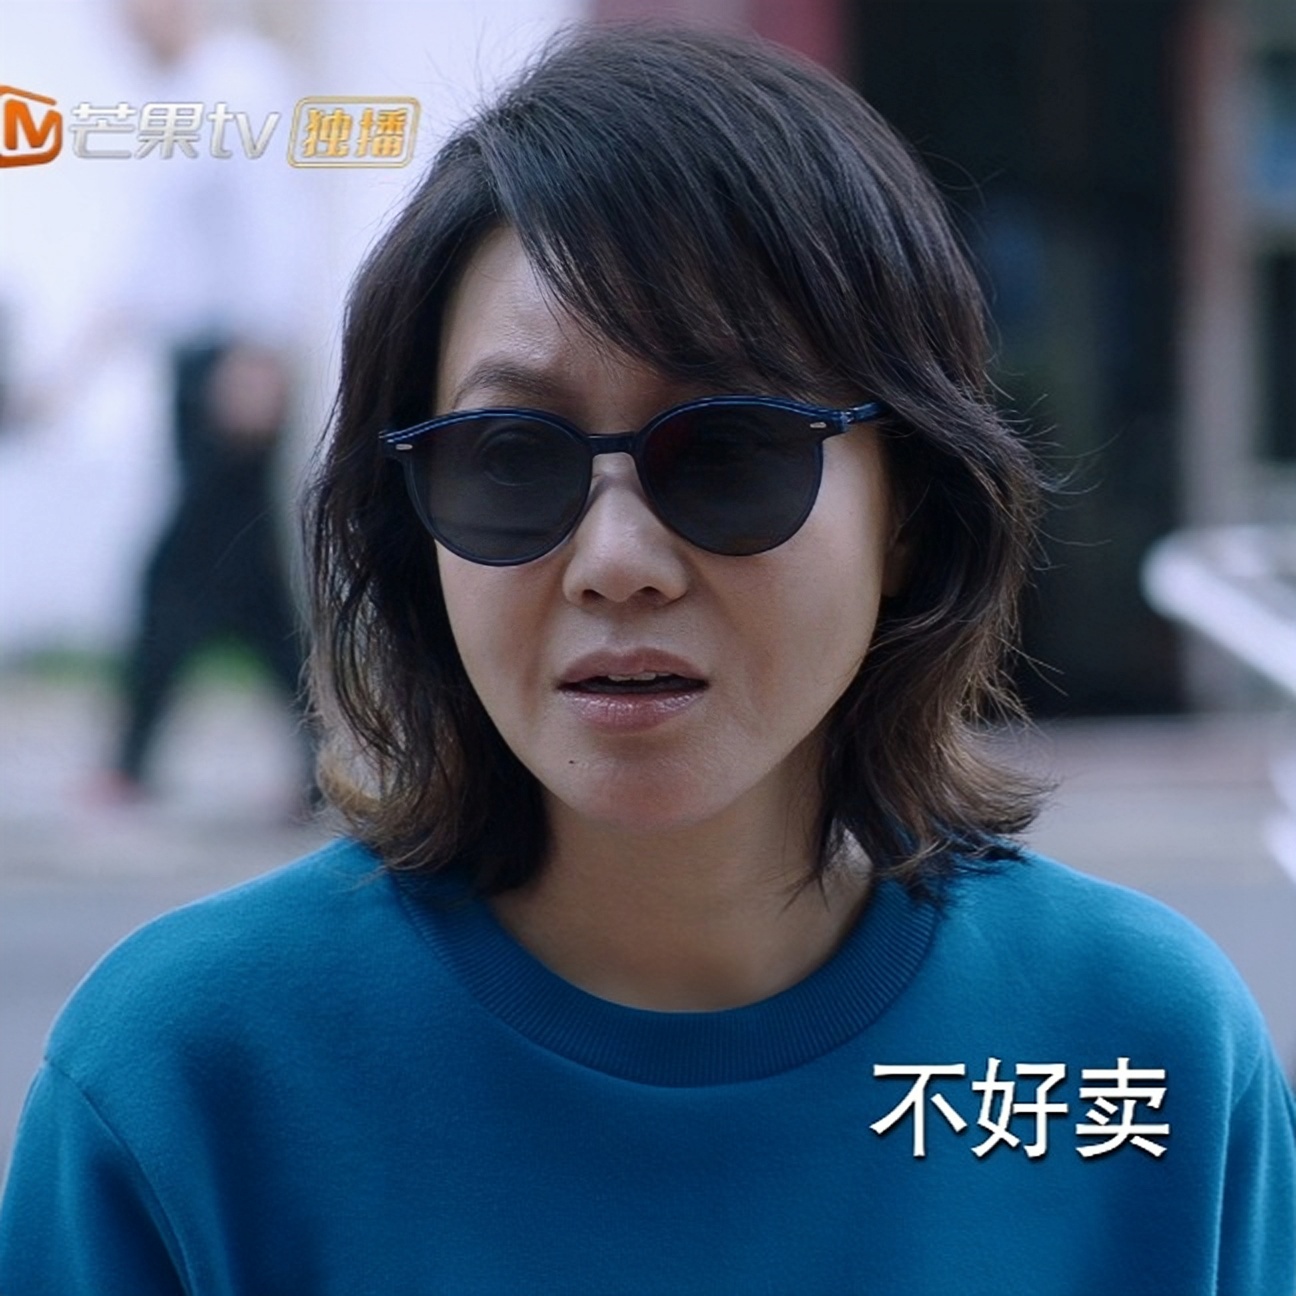 原版少年派2闫妮王胜男同款太阳眼镜防紫外线偏光时尚墨镜女潮